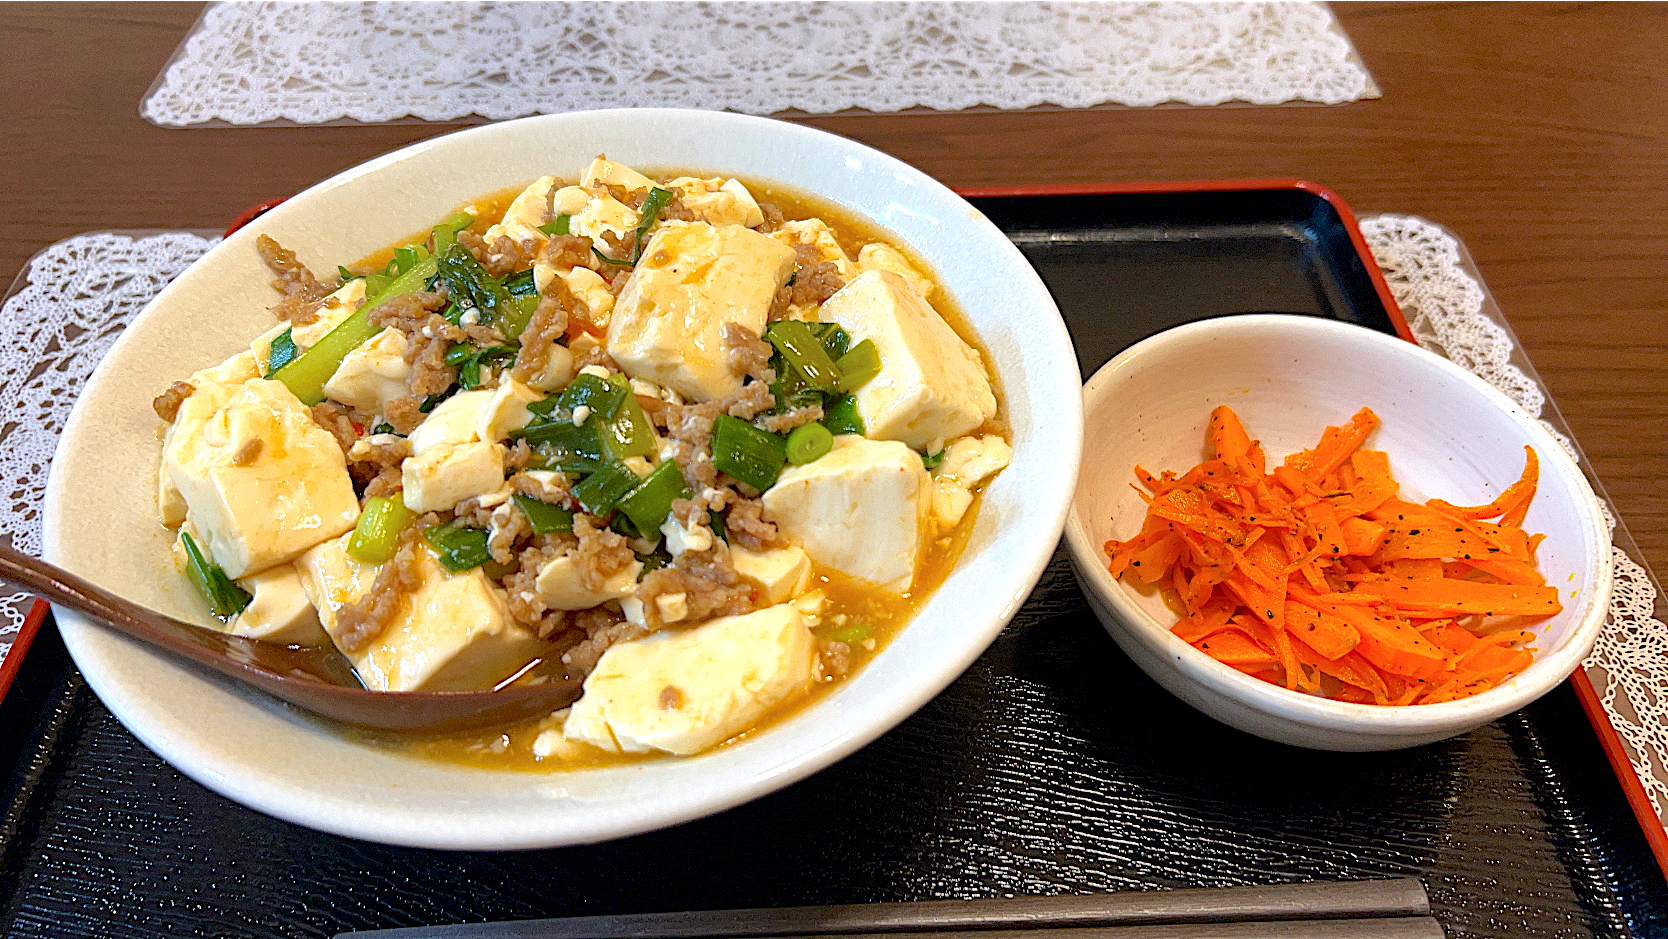 麻婆素麺♪冷たい素麺の上に熱々のピリ辛麻婆豆腐をたっぷりかけて頂きます。有り合わせの材料でたまたま作ってみたら、美味しかってです